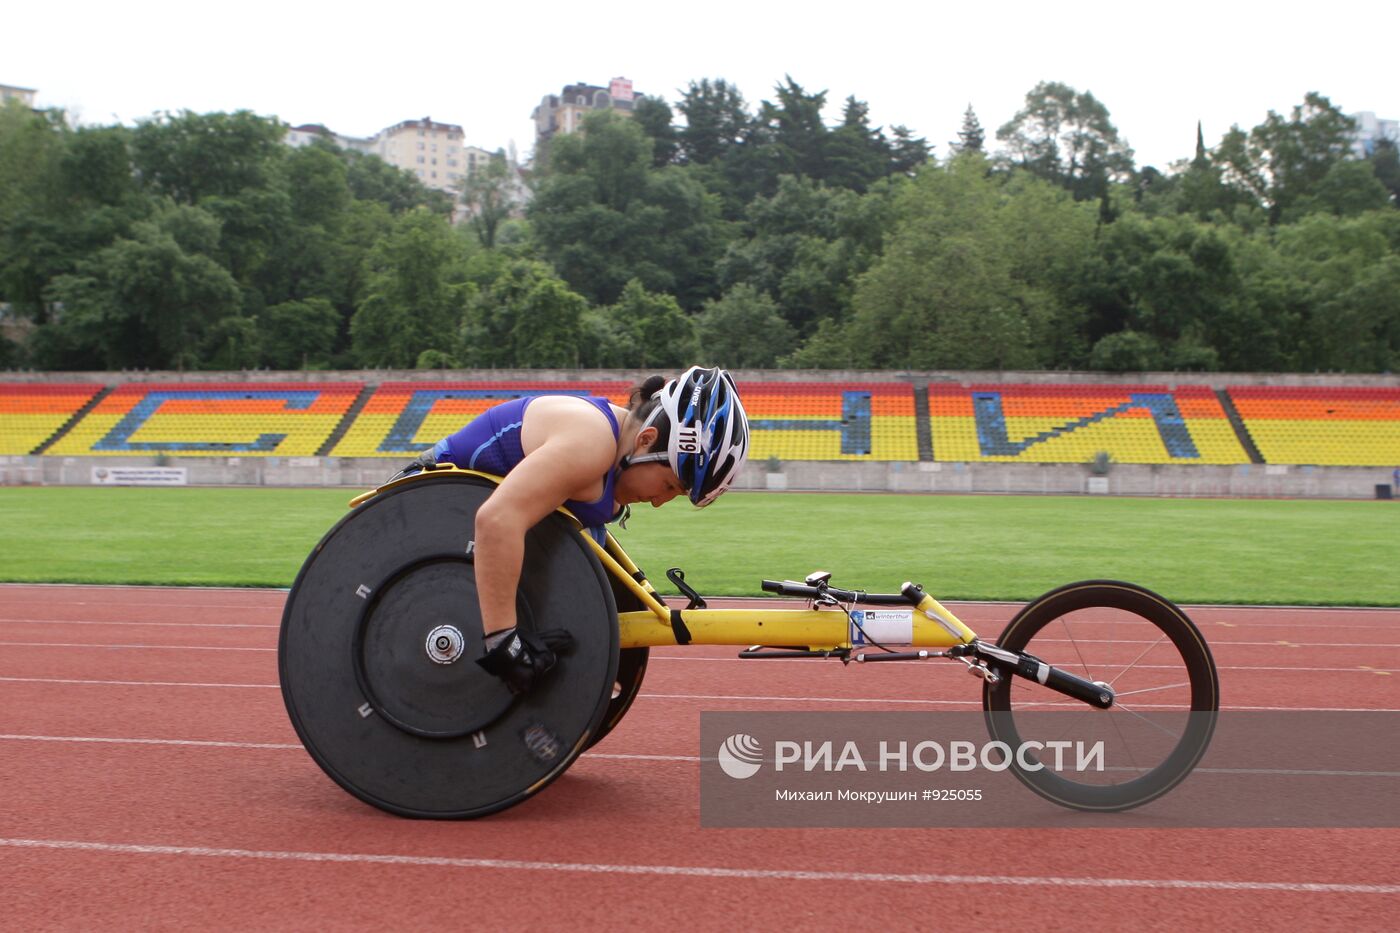 Тренировка паралимпийской сборной России по лыжным гонкам